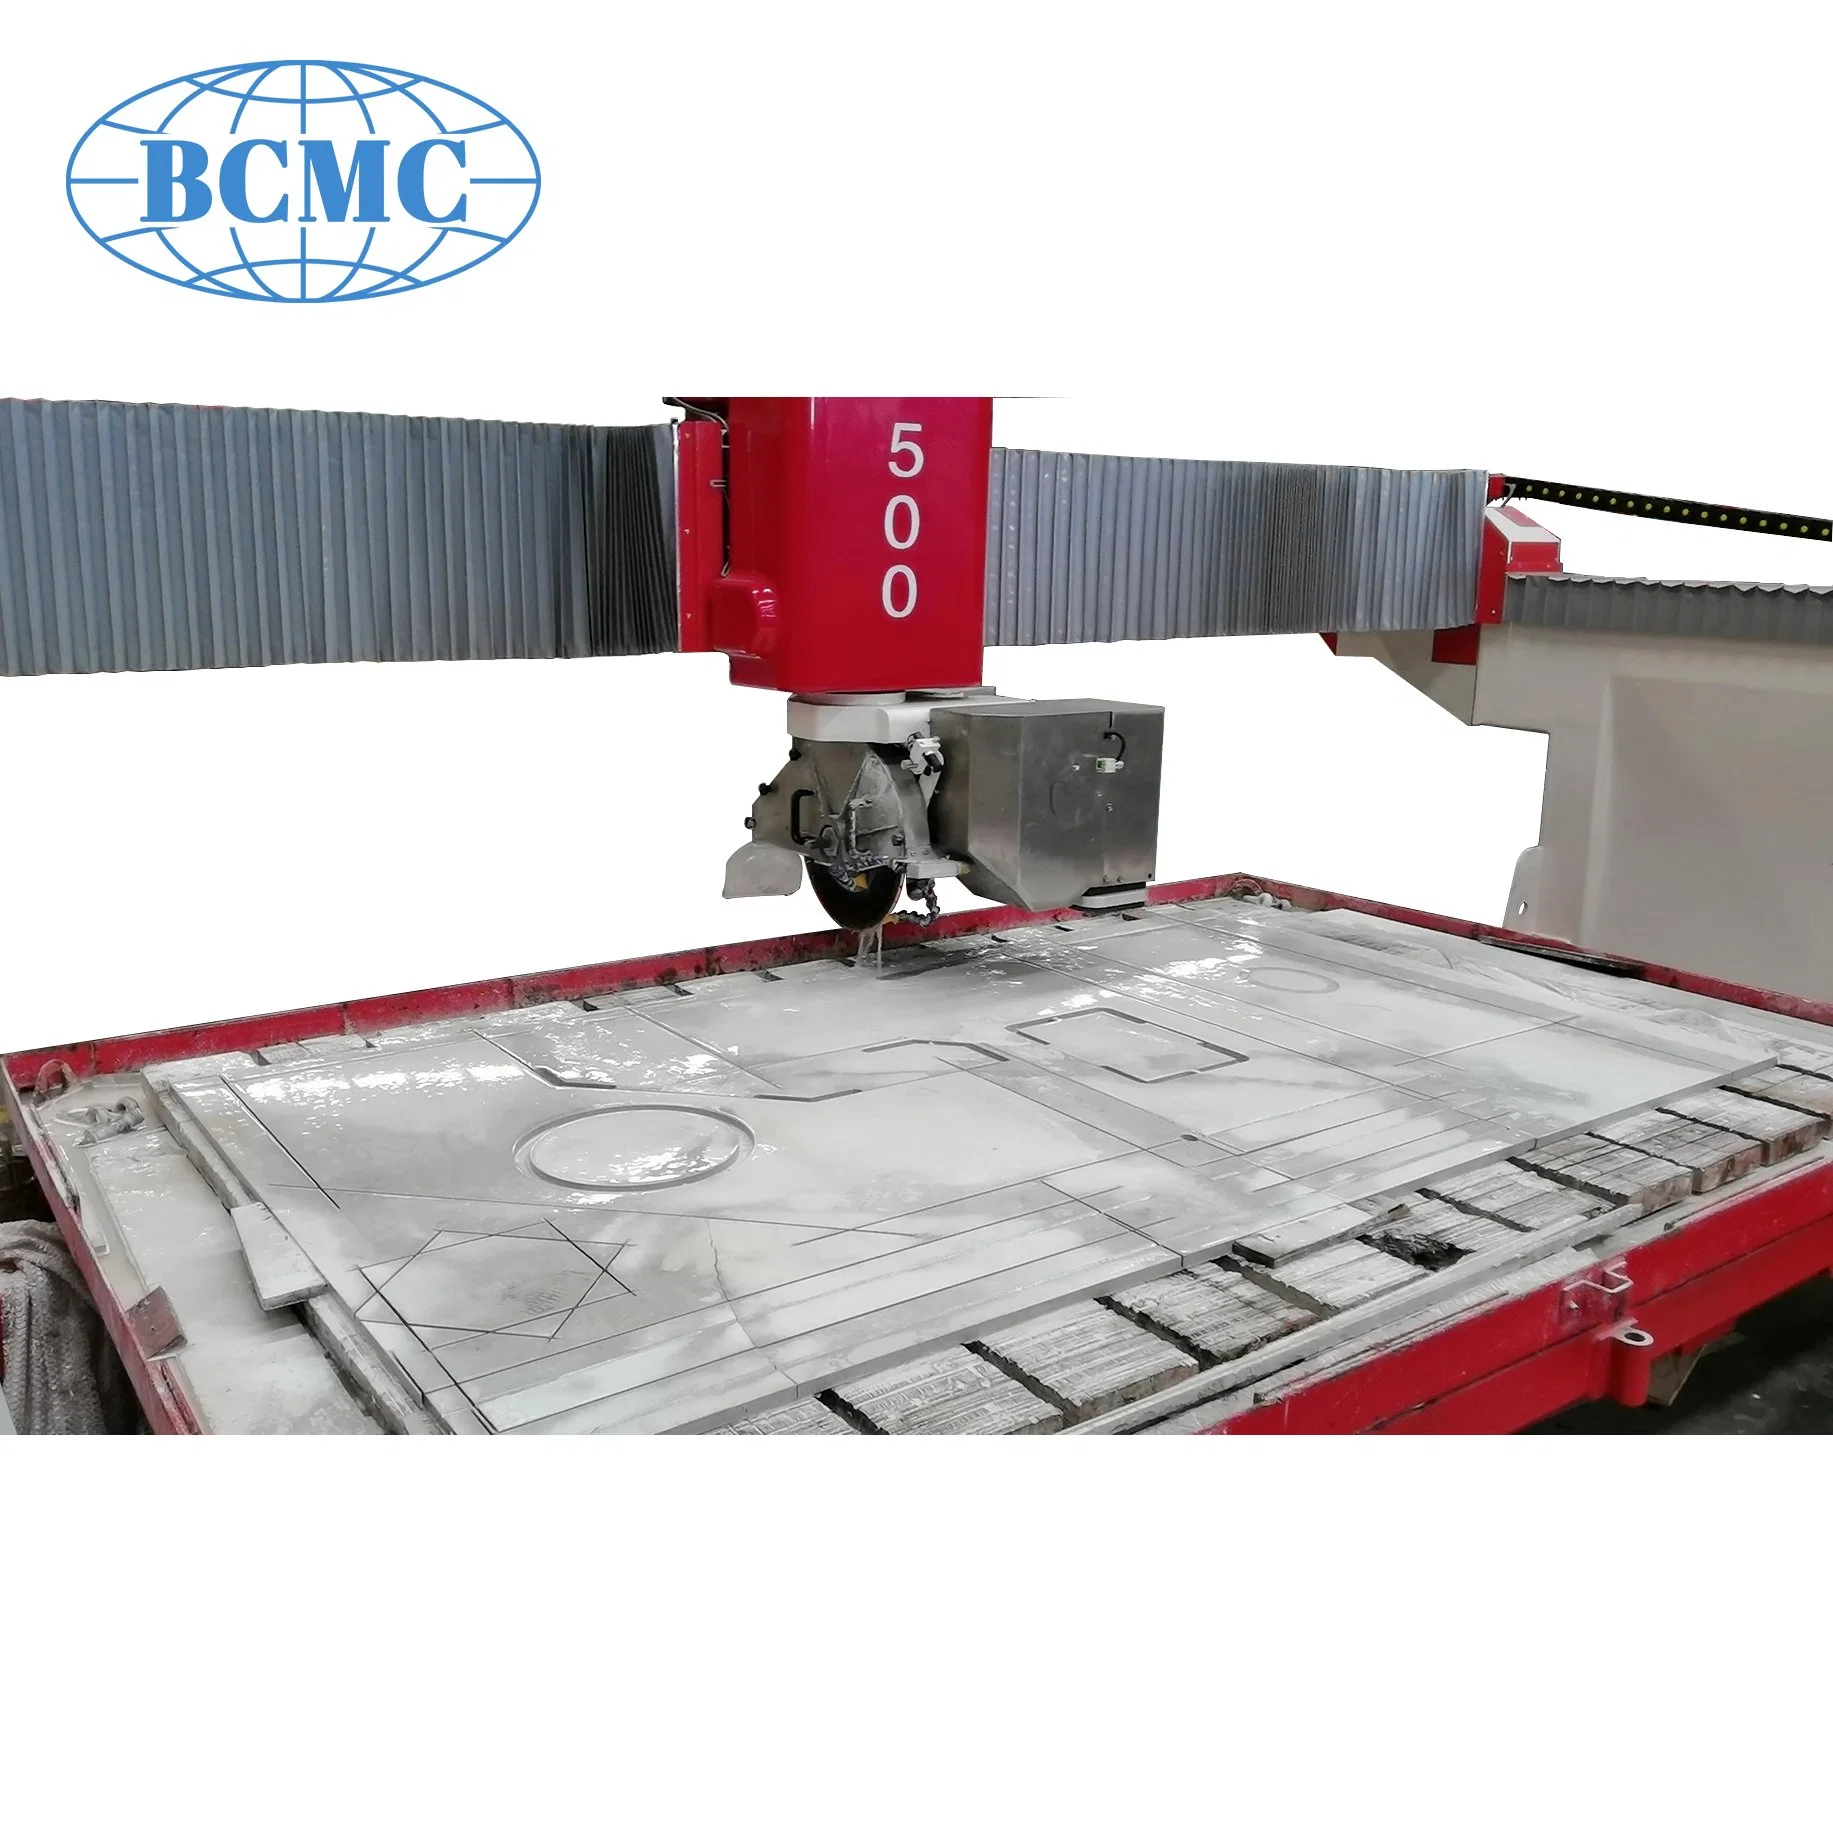 Bcmc 5 Axis Ponte de CNC viu pela Itália de Pedra Sistema Sec mármore automática máquina de corte